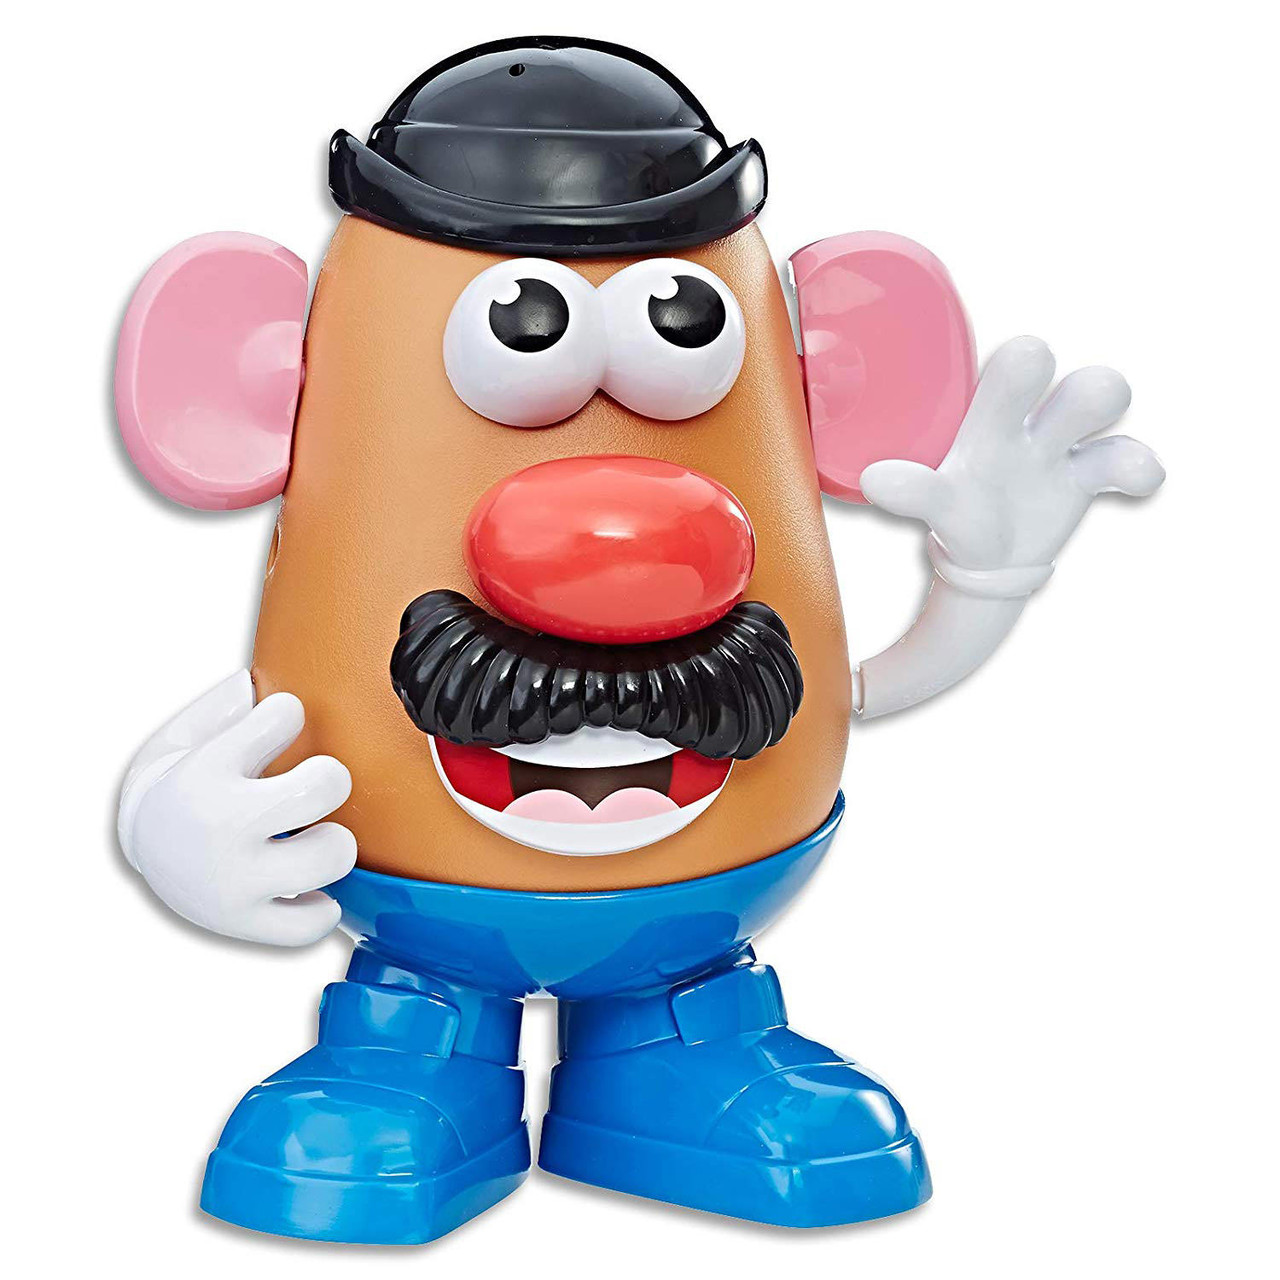 Monsieur patate - Hasbro - Prématuré